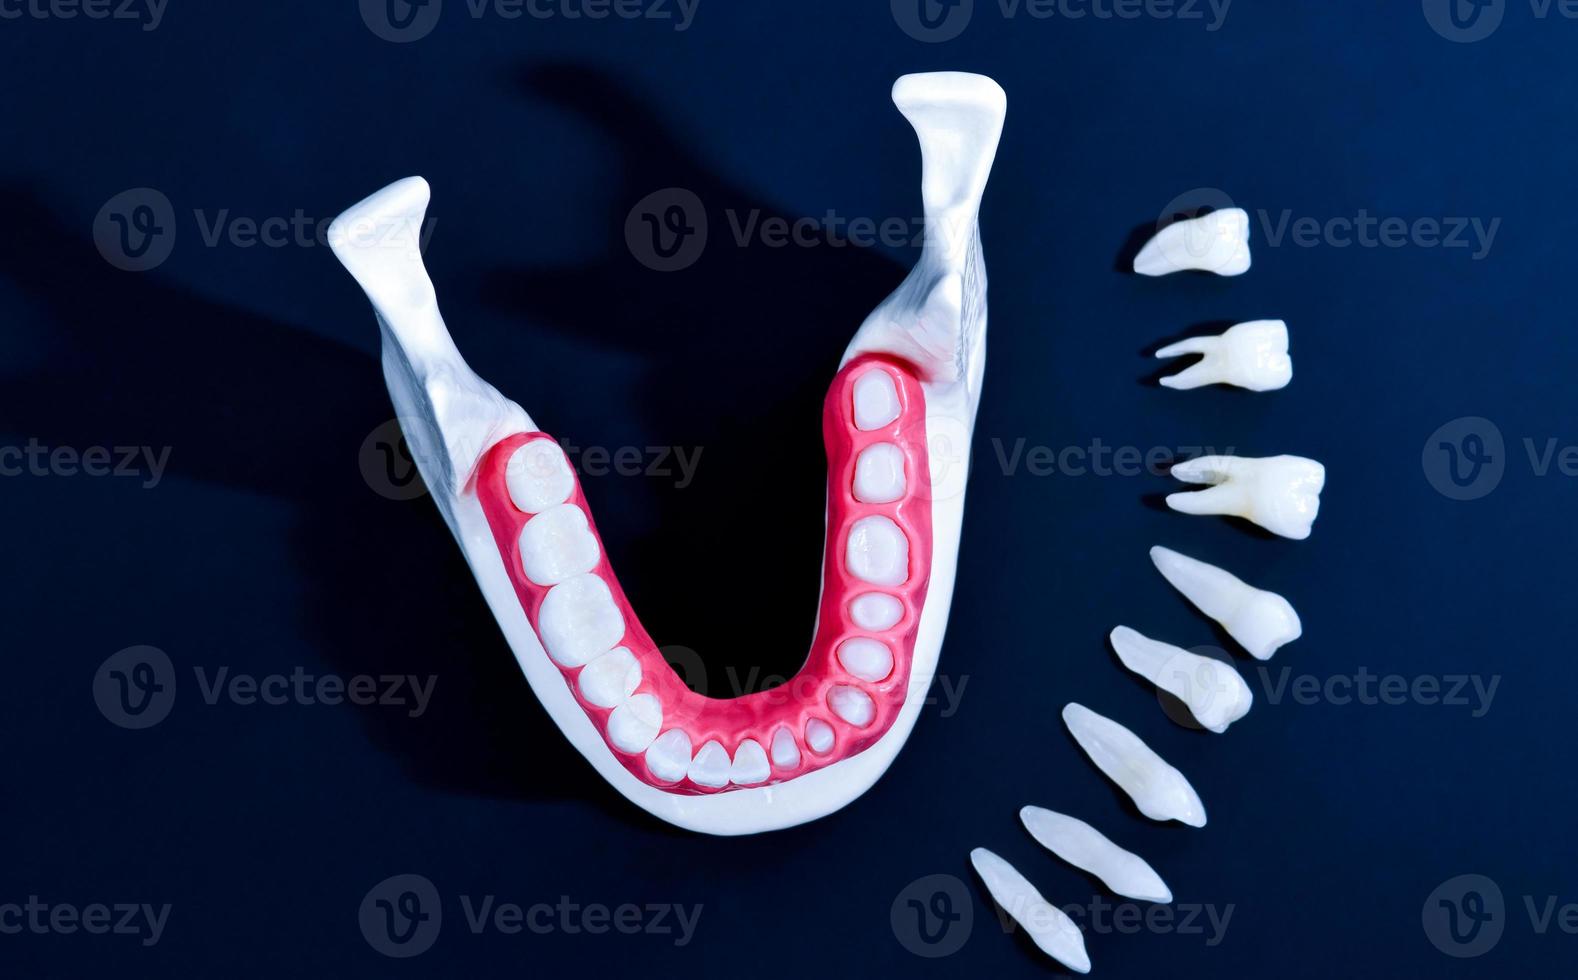 processus d'installation d'implants dentaires et de couronnes photo